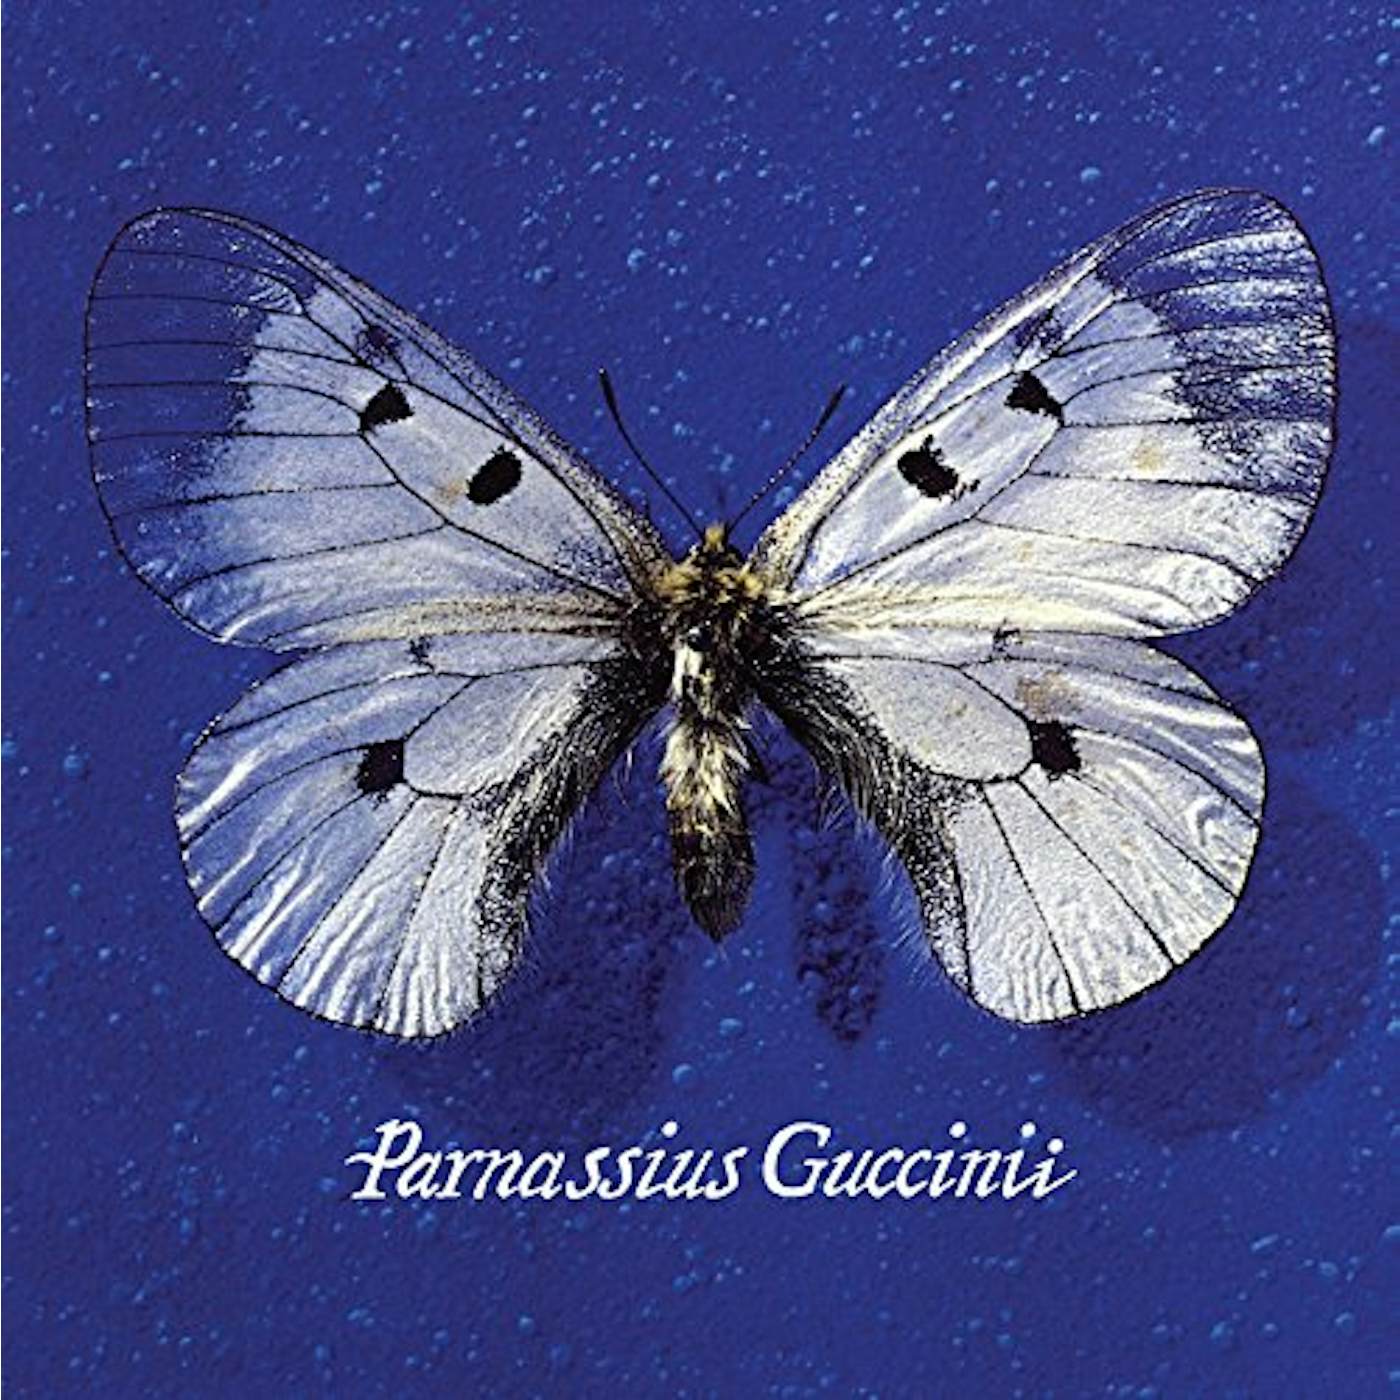 Francesco Guccini Parnassius Guccinii Vinyl Record